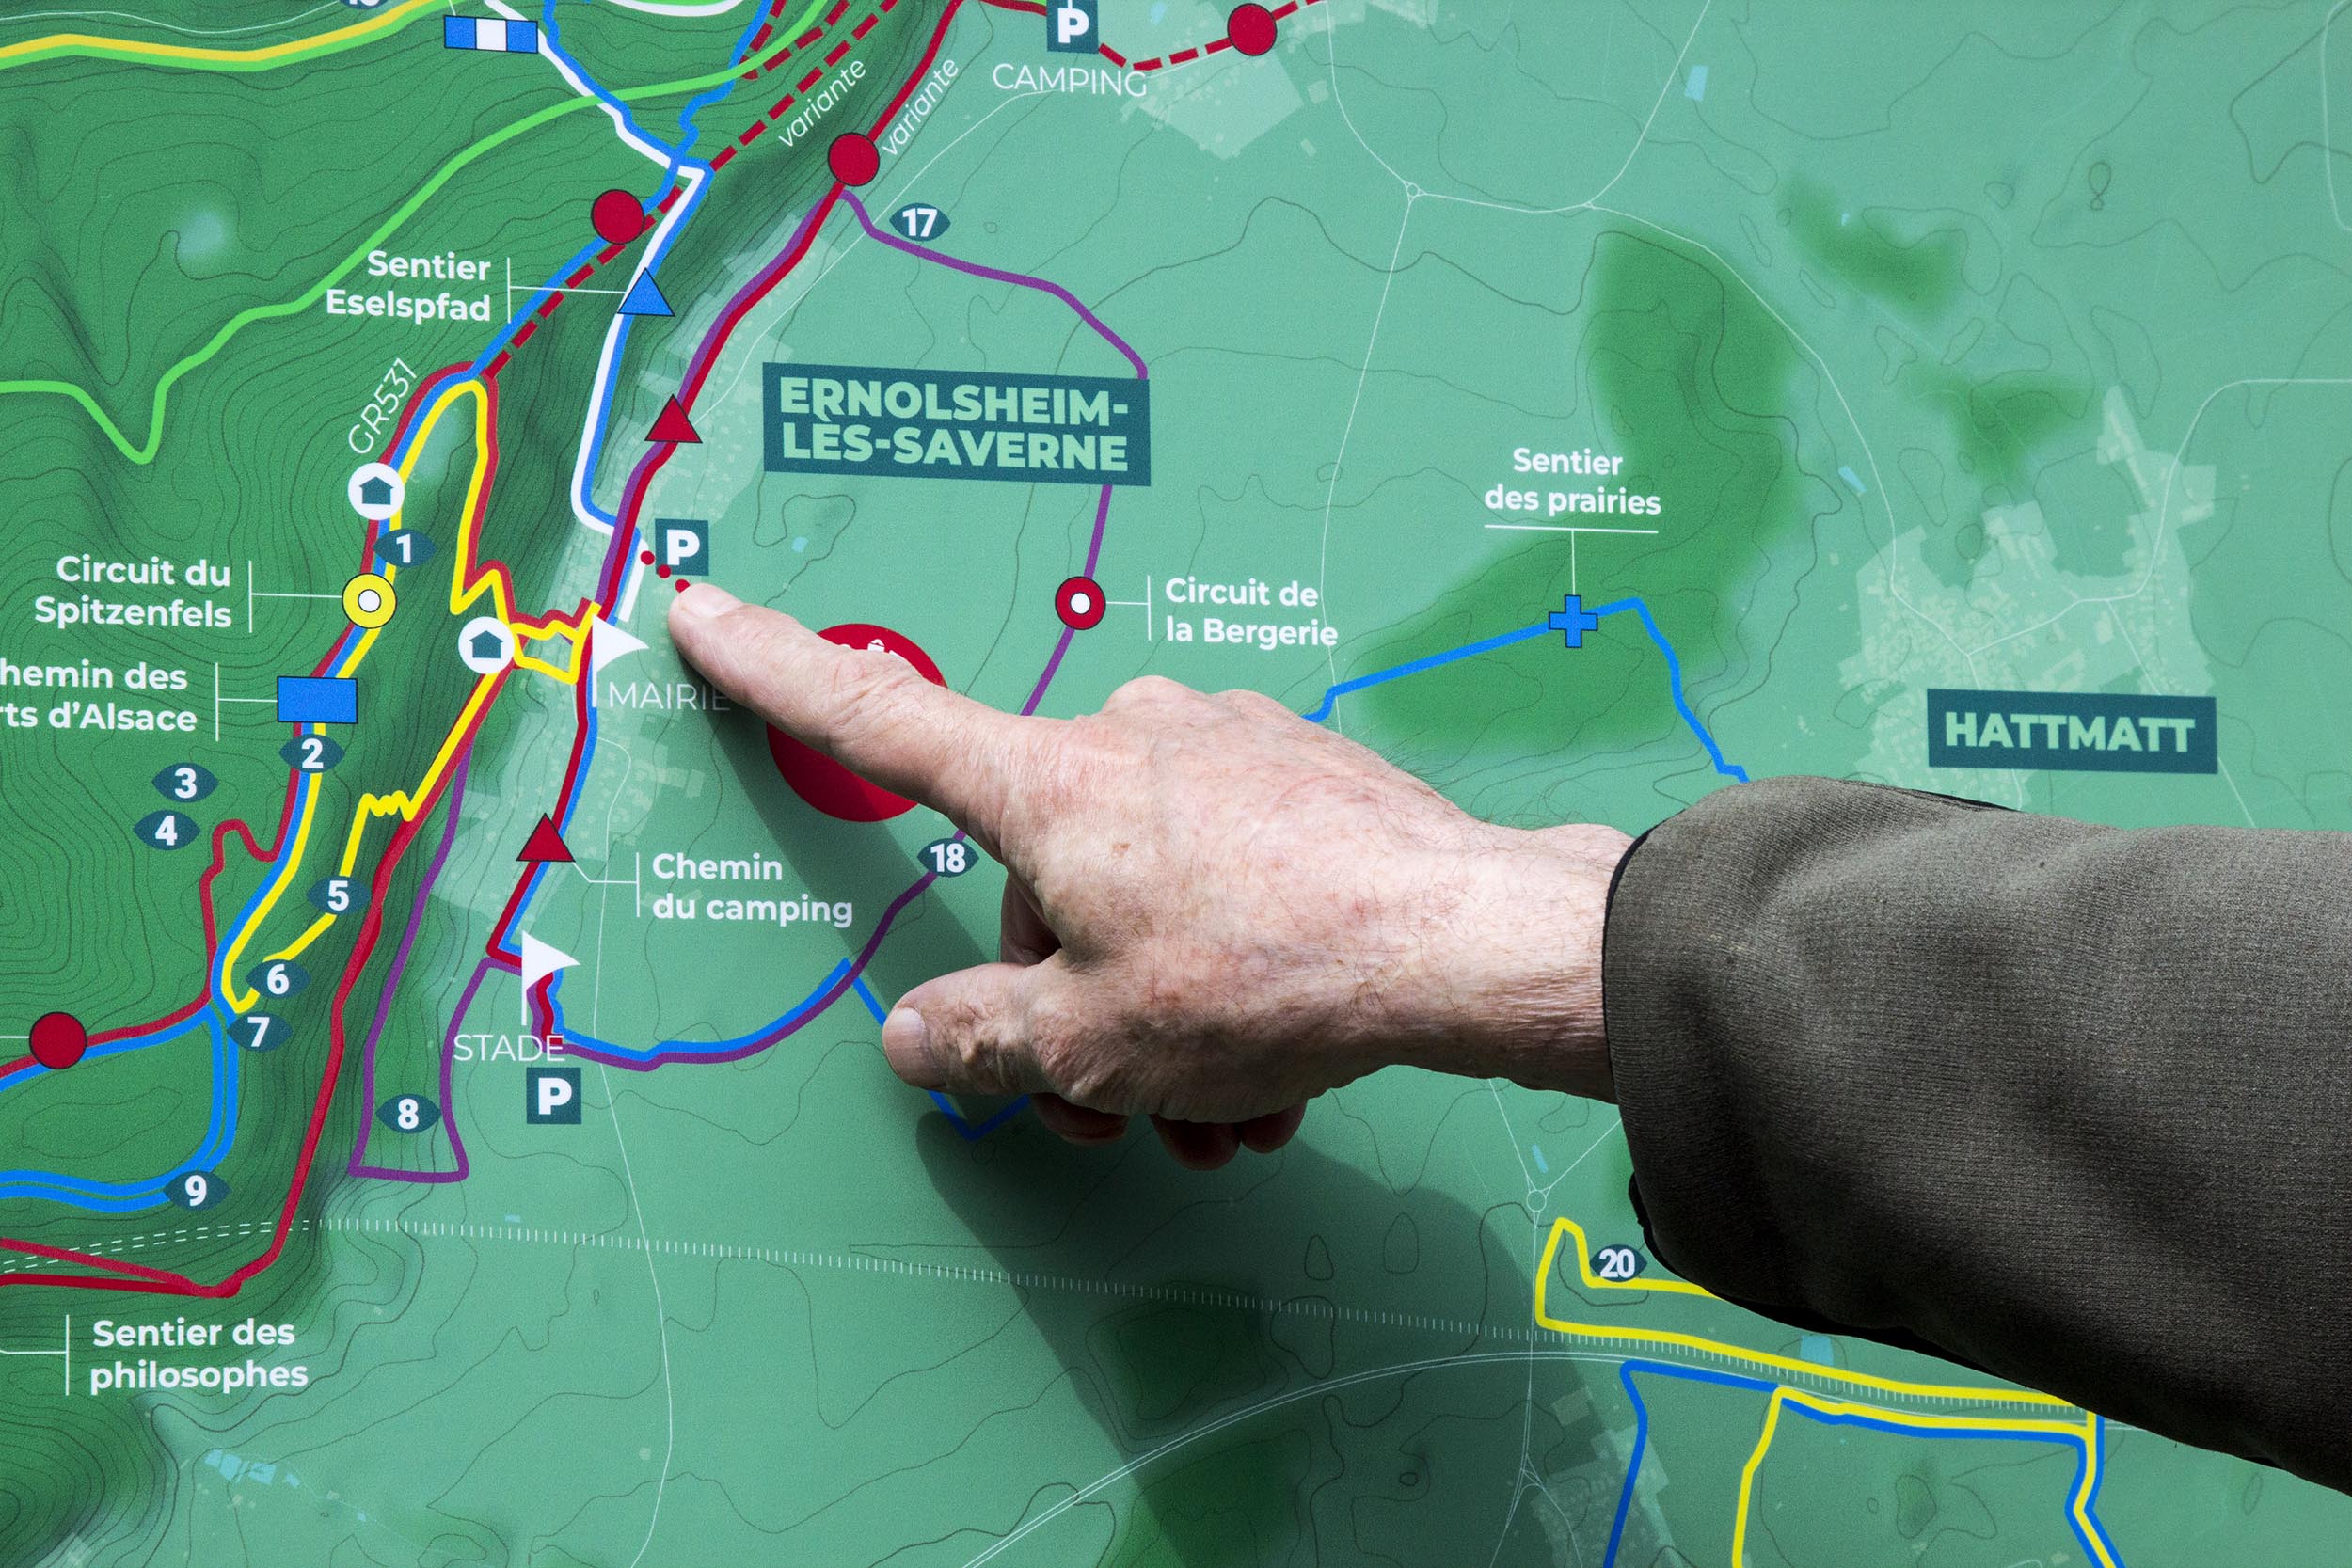 Un randonneur pointe son doigt sur un lieu du parcours, sur la carte géographique des circuits de randonnée